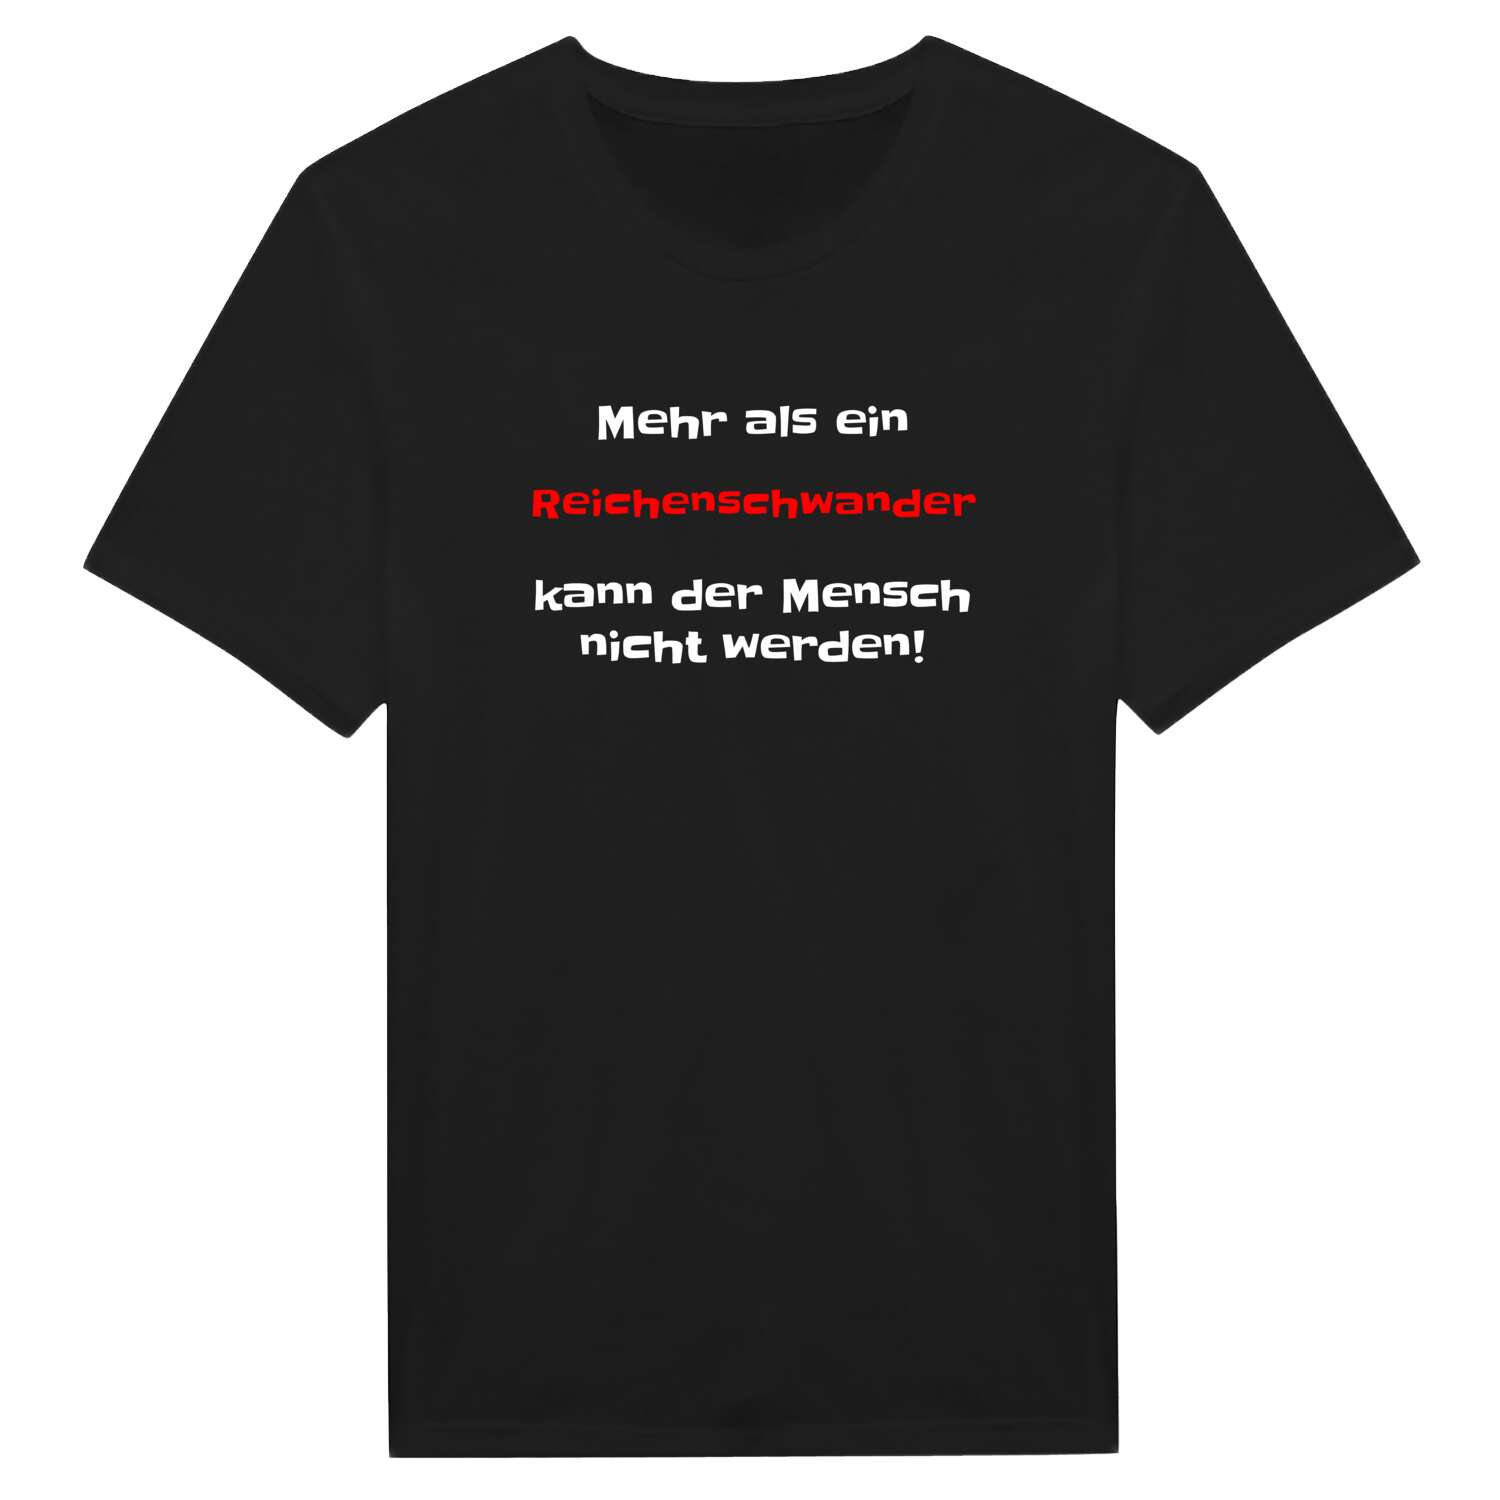 Reichenschwand T-Shirt »Mehr als ein«